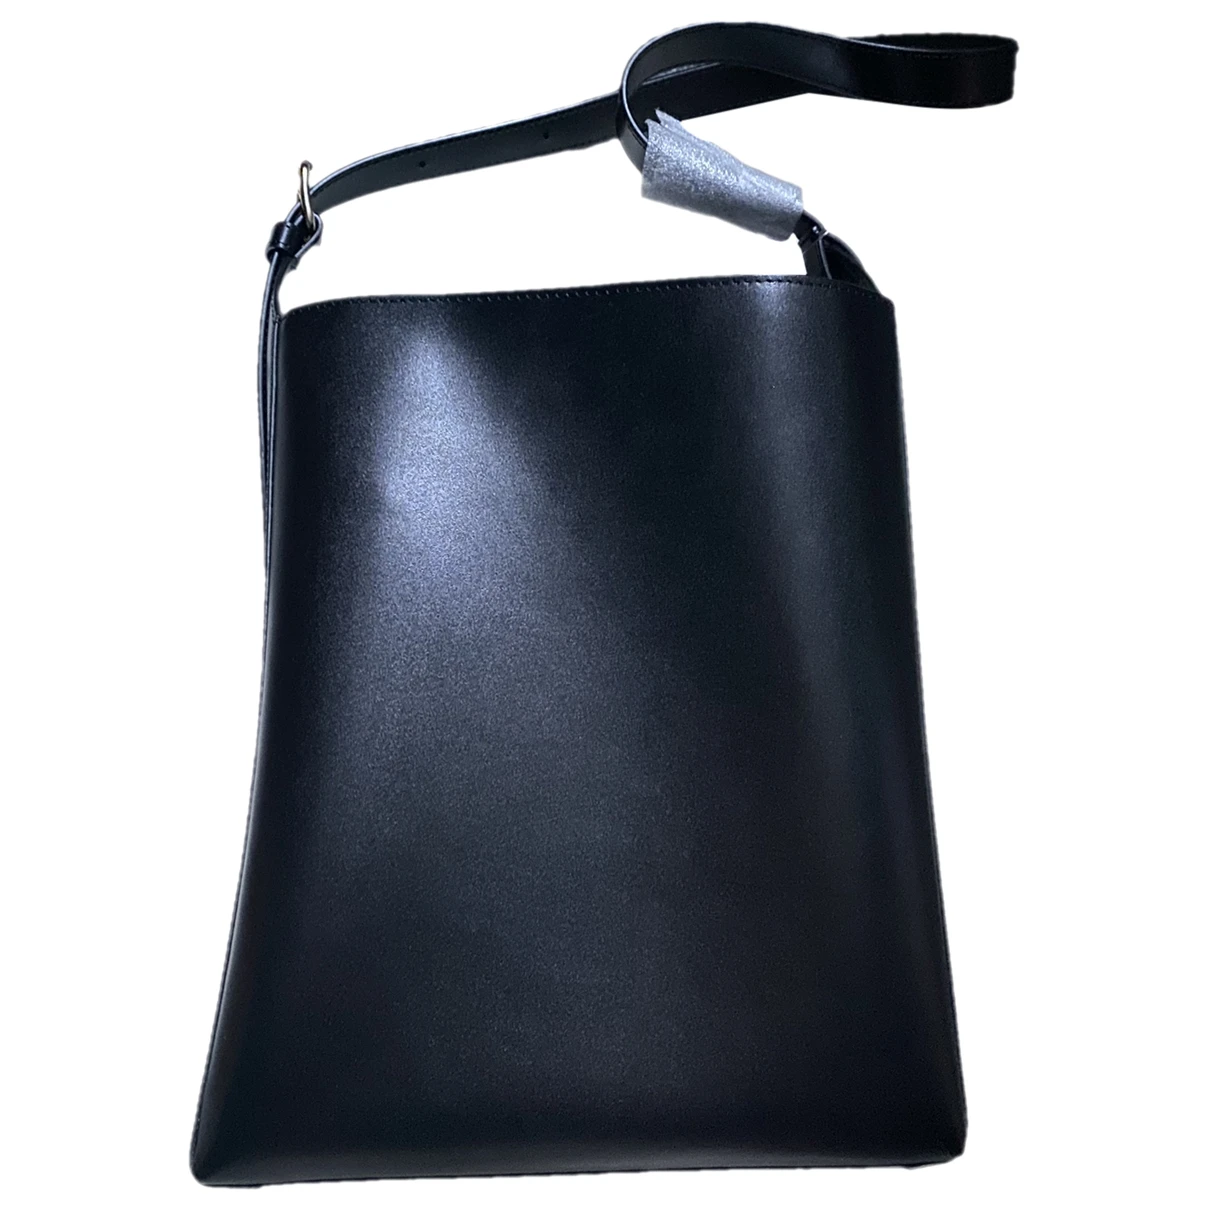 Pre-owned Apc Leather Handbag In Black